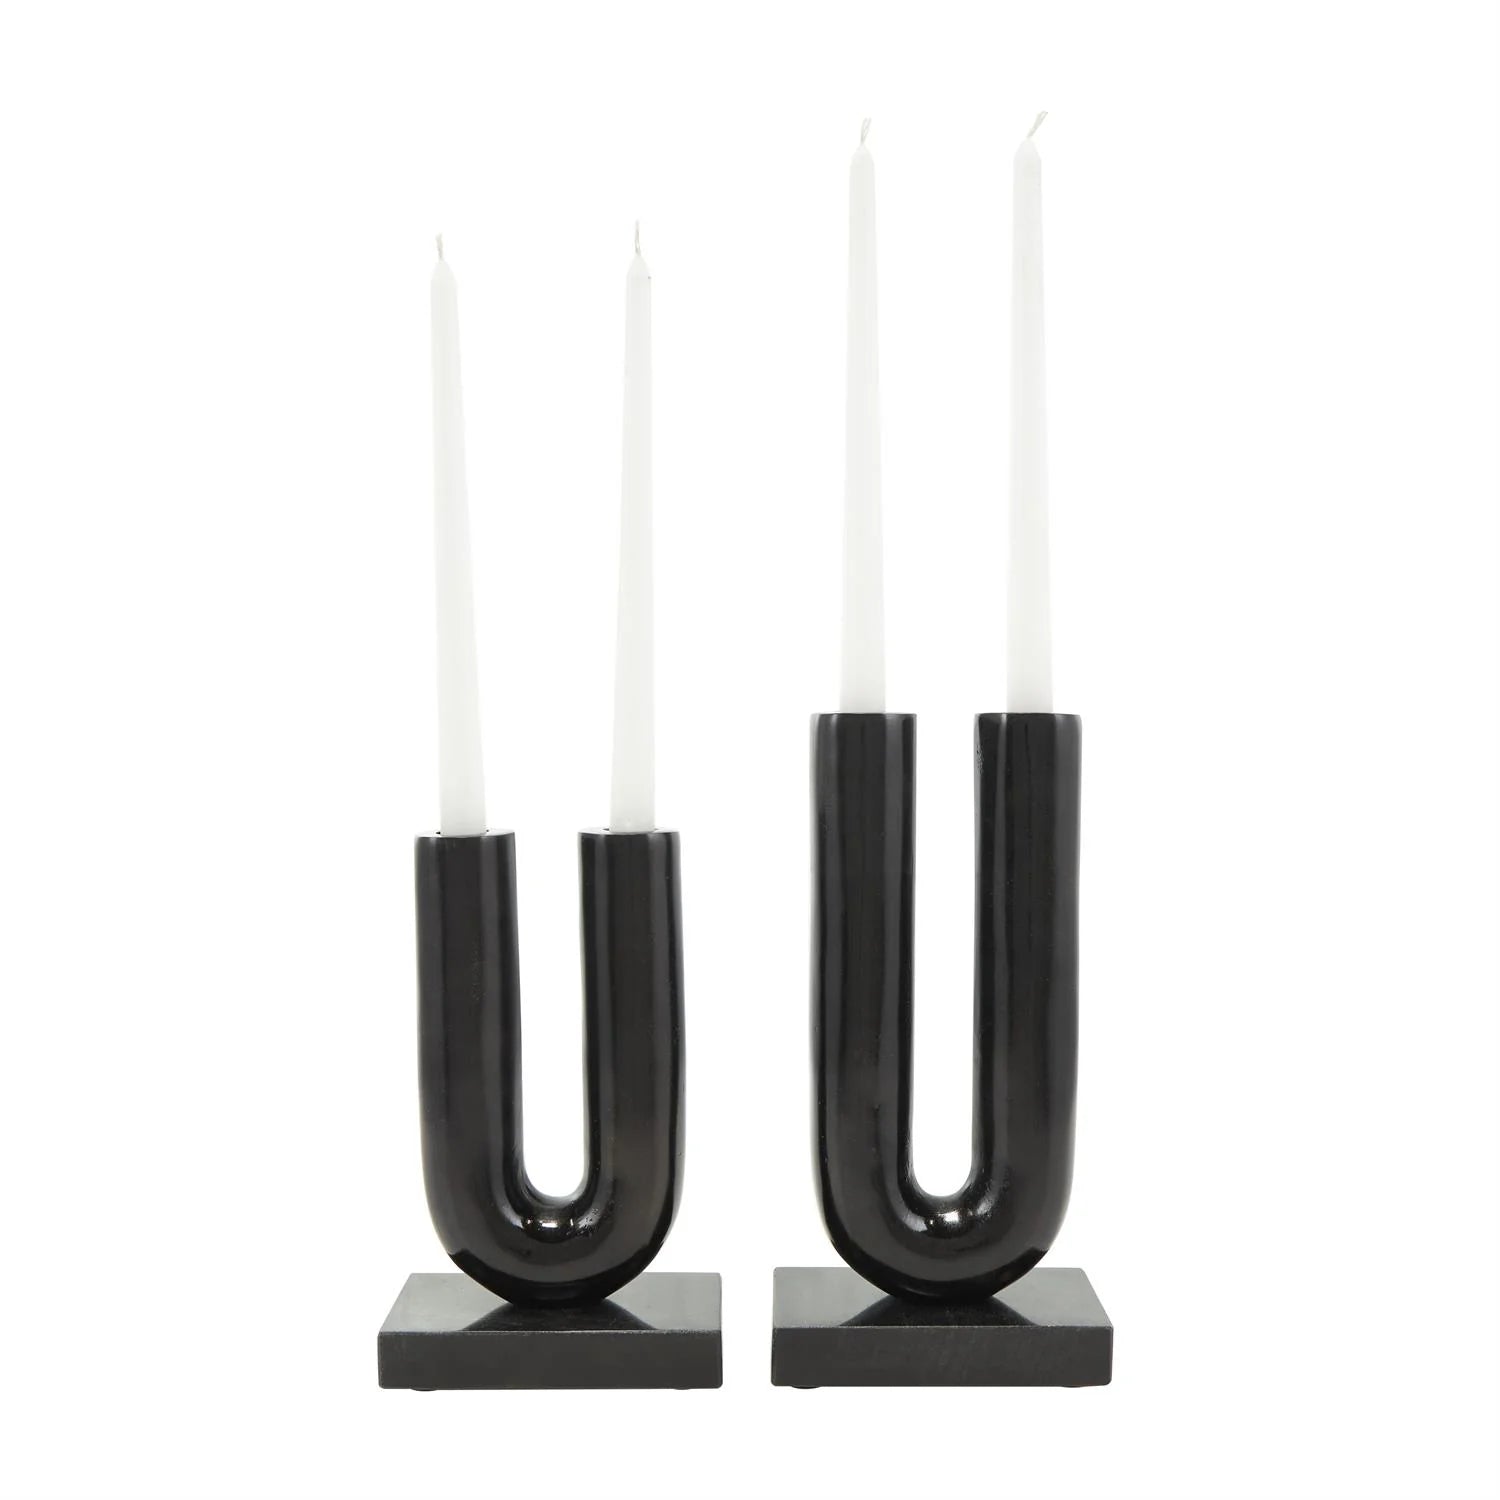 Black Aluminum U-shaped candle Holder with Marble Bases Set of 2